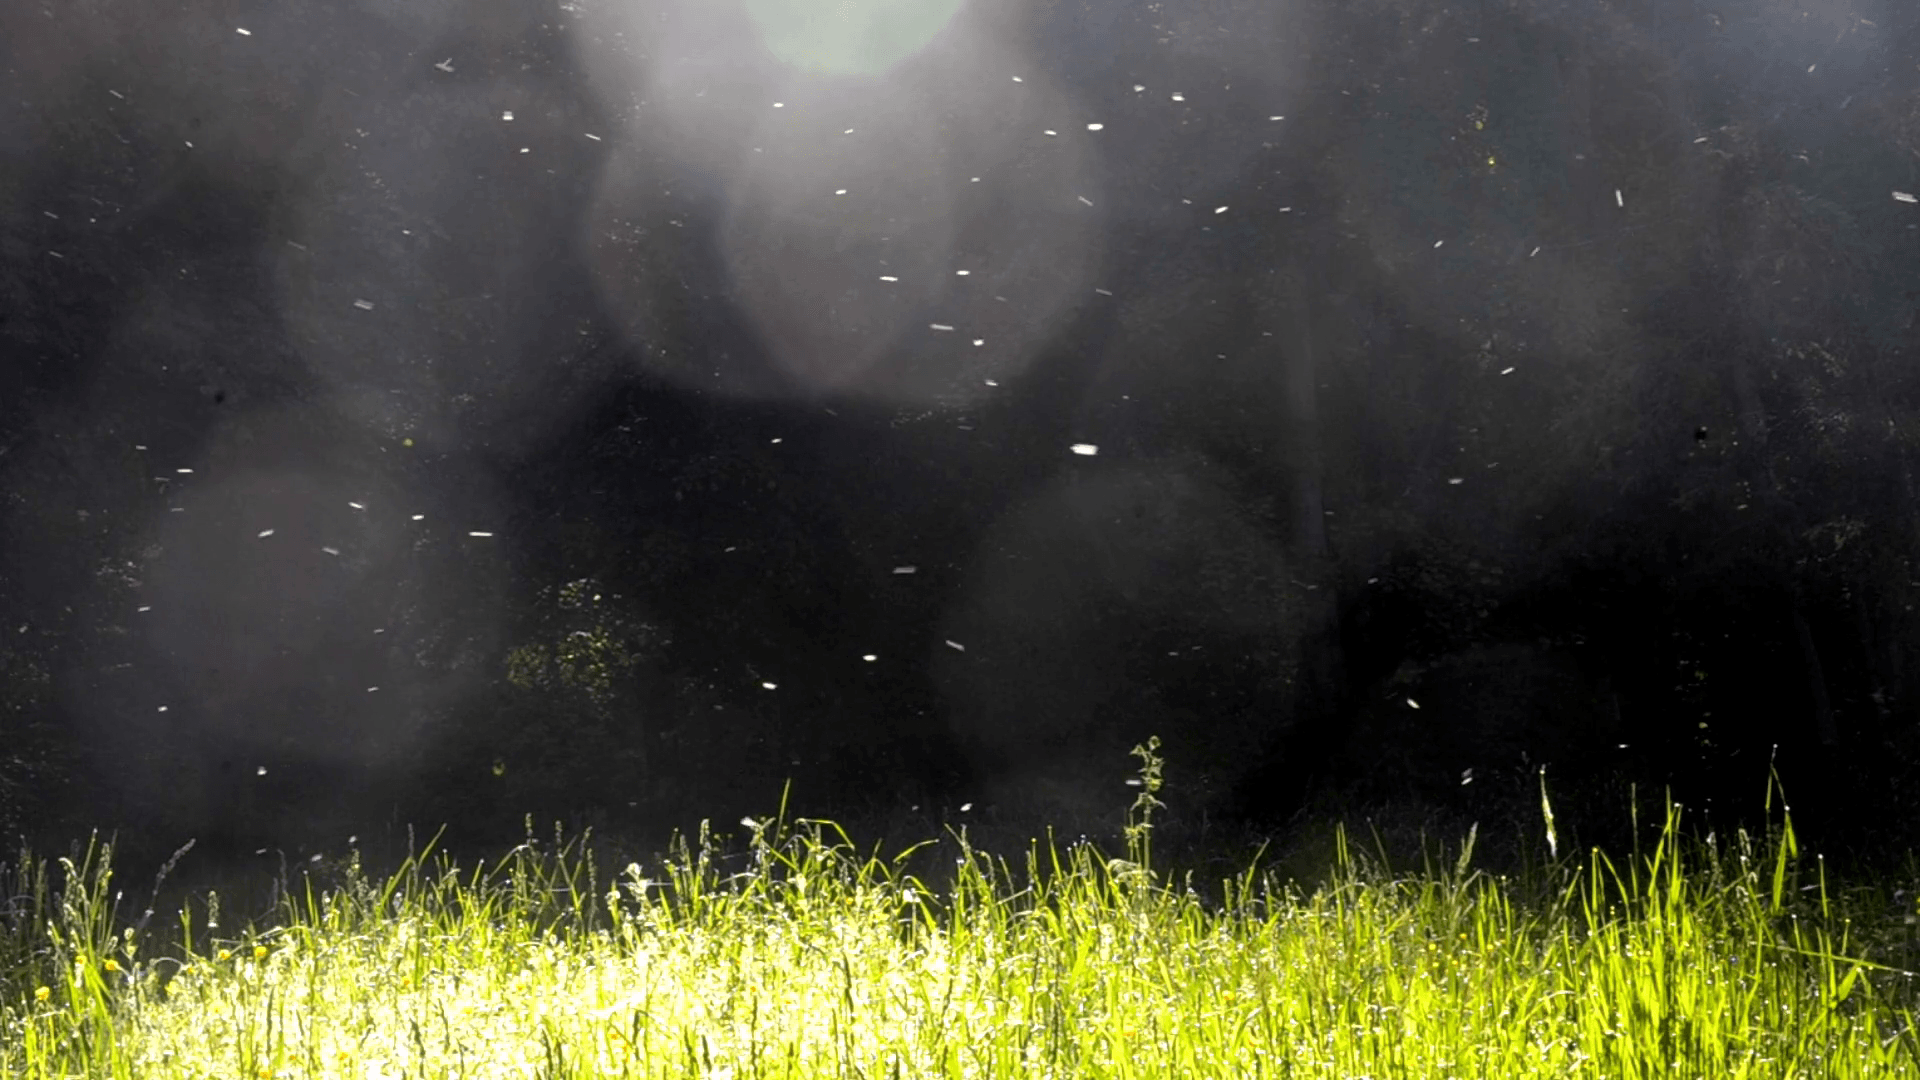 Poplar fluff flies over a lawn of green grass with a dark black